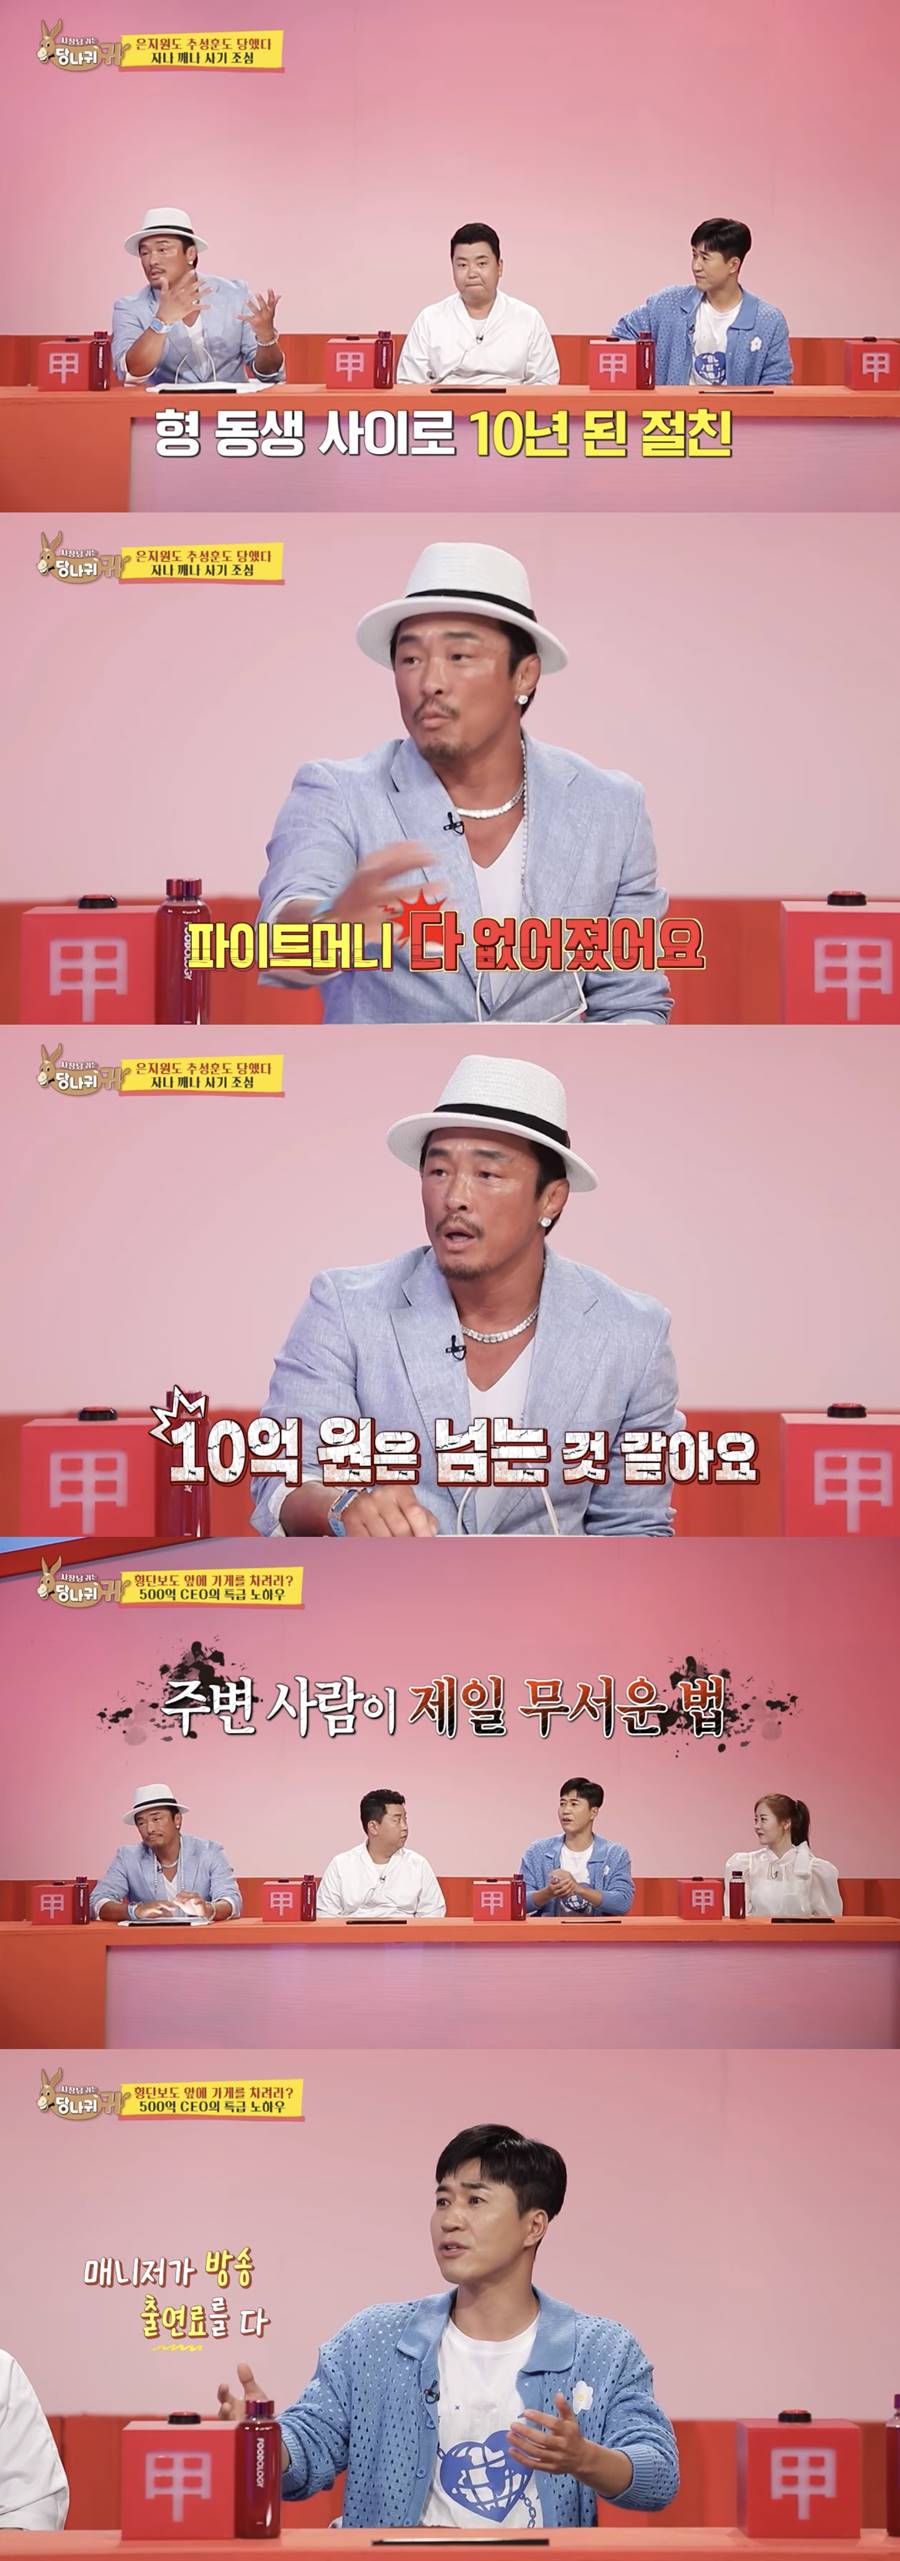 ▲ KBS2 예능 프로그램 '사장님 귀는 당나귀 귀'. 출처| '사장님 귀는 당나귀 귀' 방송화면 캡처